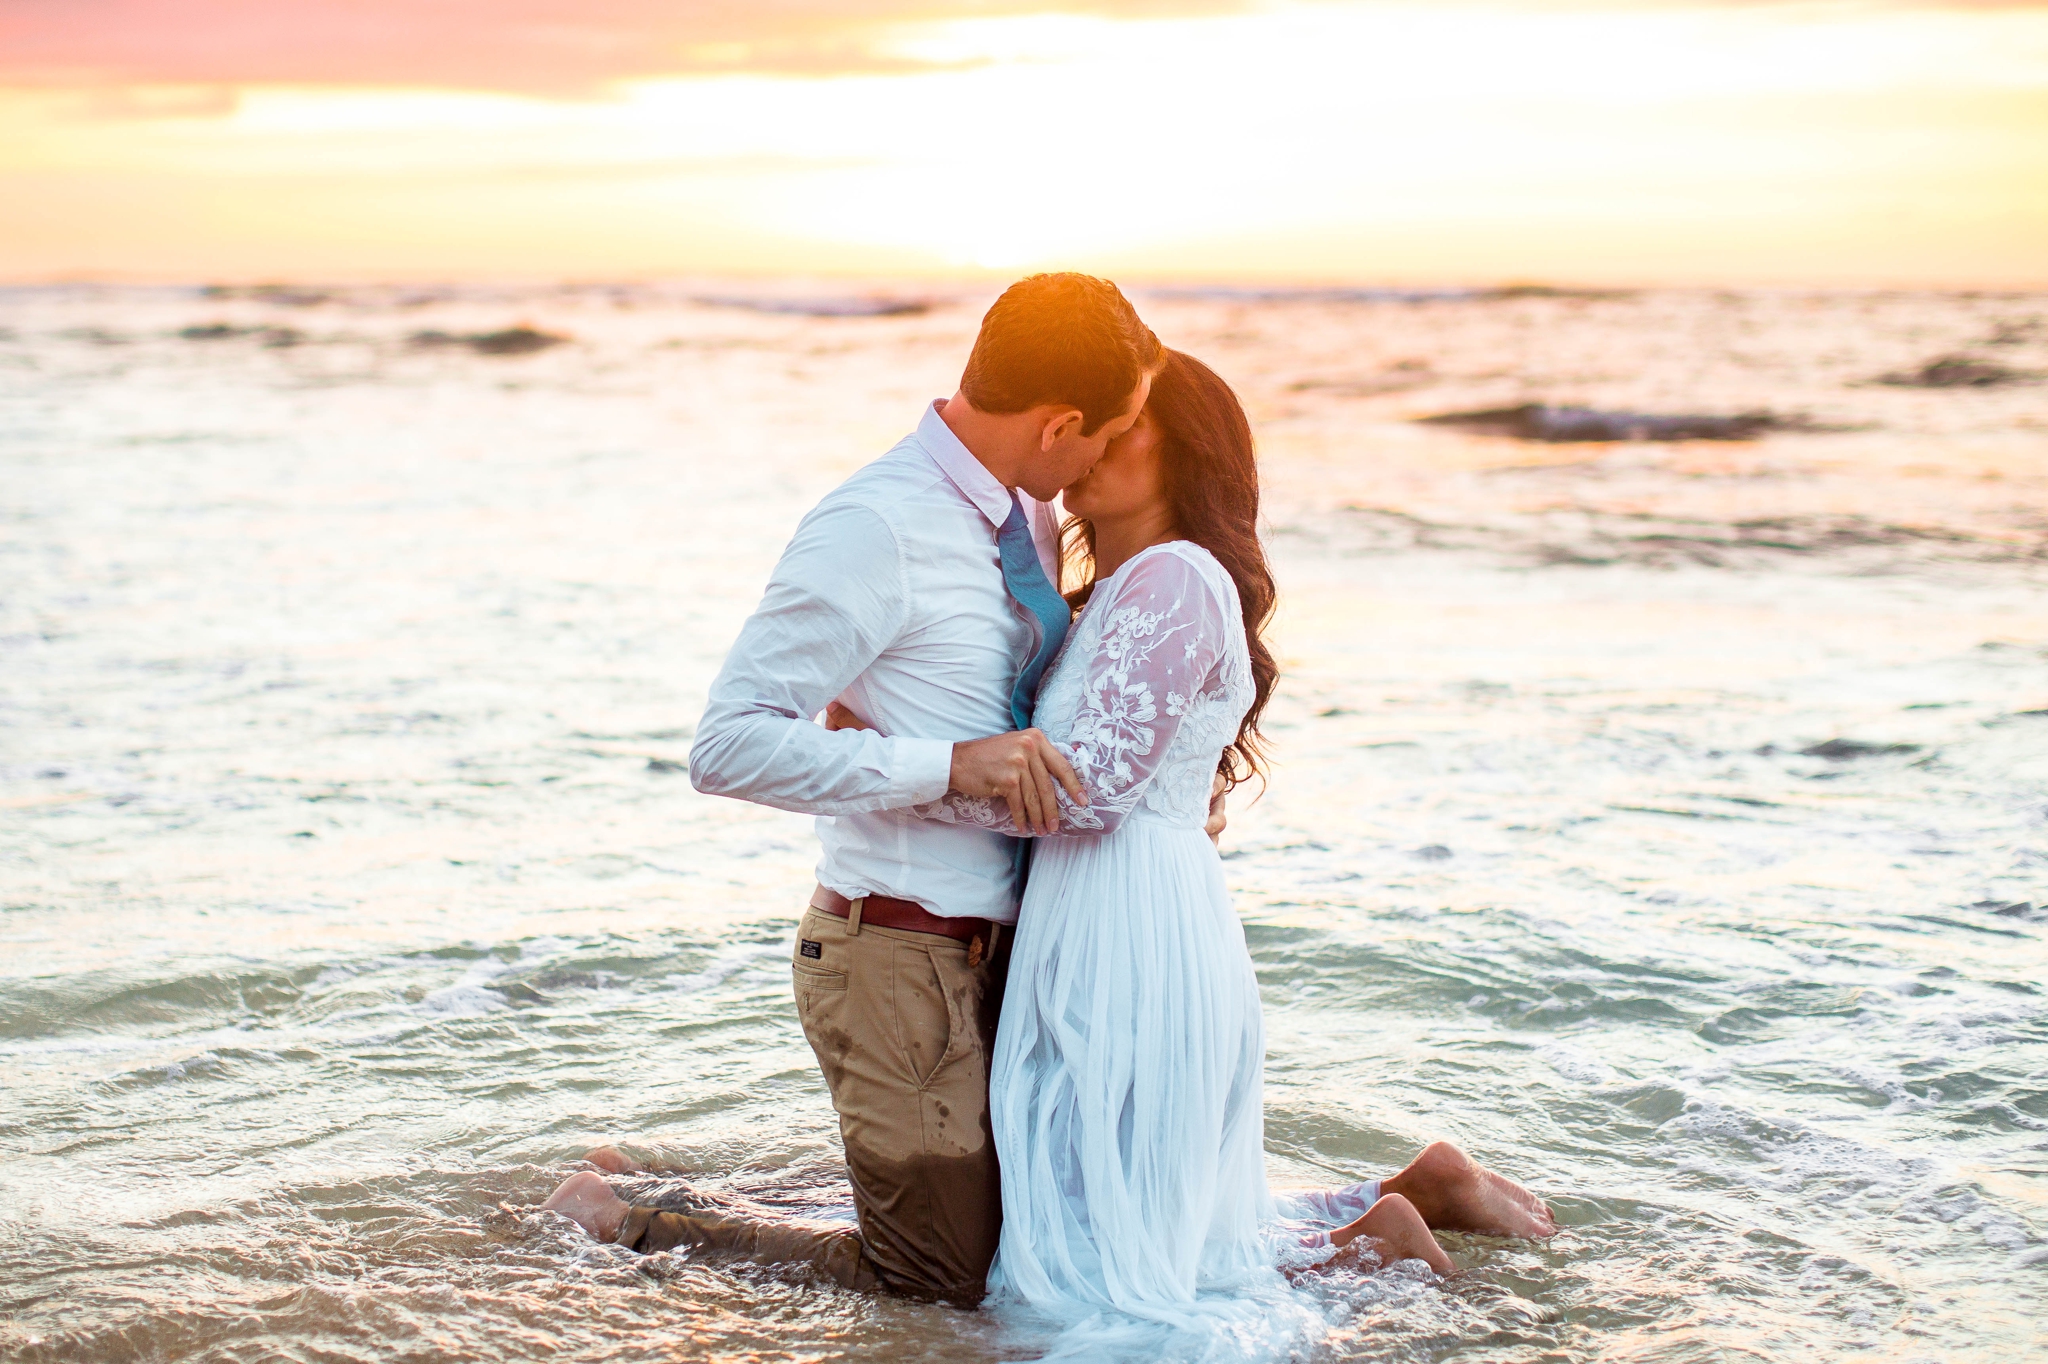  Bride and Groom kissing in the ocean - Wedding Portraits at Sunset in Hawaii - Ana + Elijah - Wedding at Loulu Palm in Haleiwa, HI - Oahu Hawaii Wedding Photographer - #hawaiiweddingphotographer #oahuweddings #hawaiiweddings 